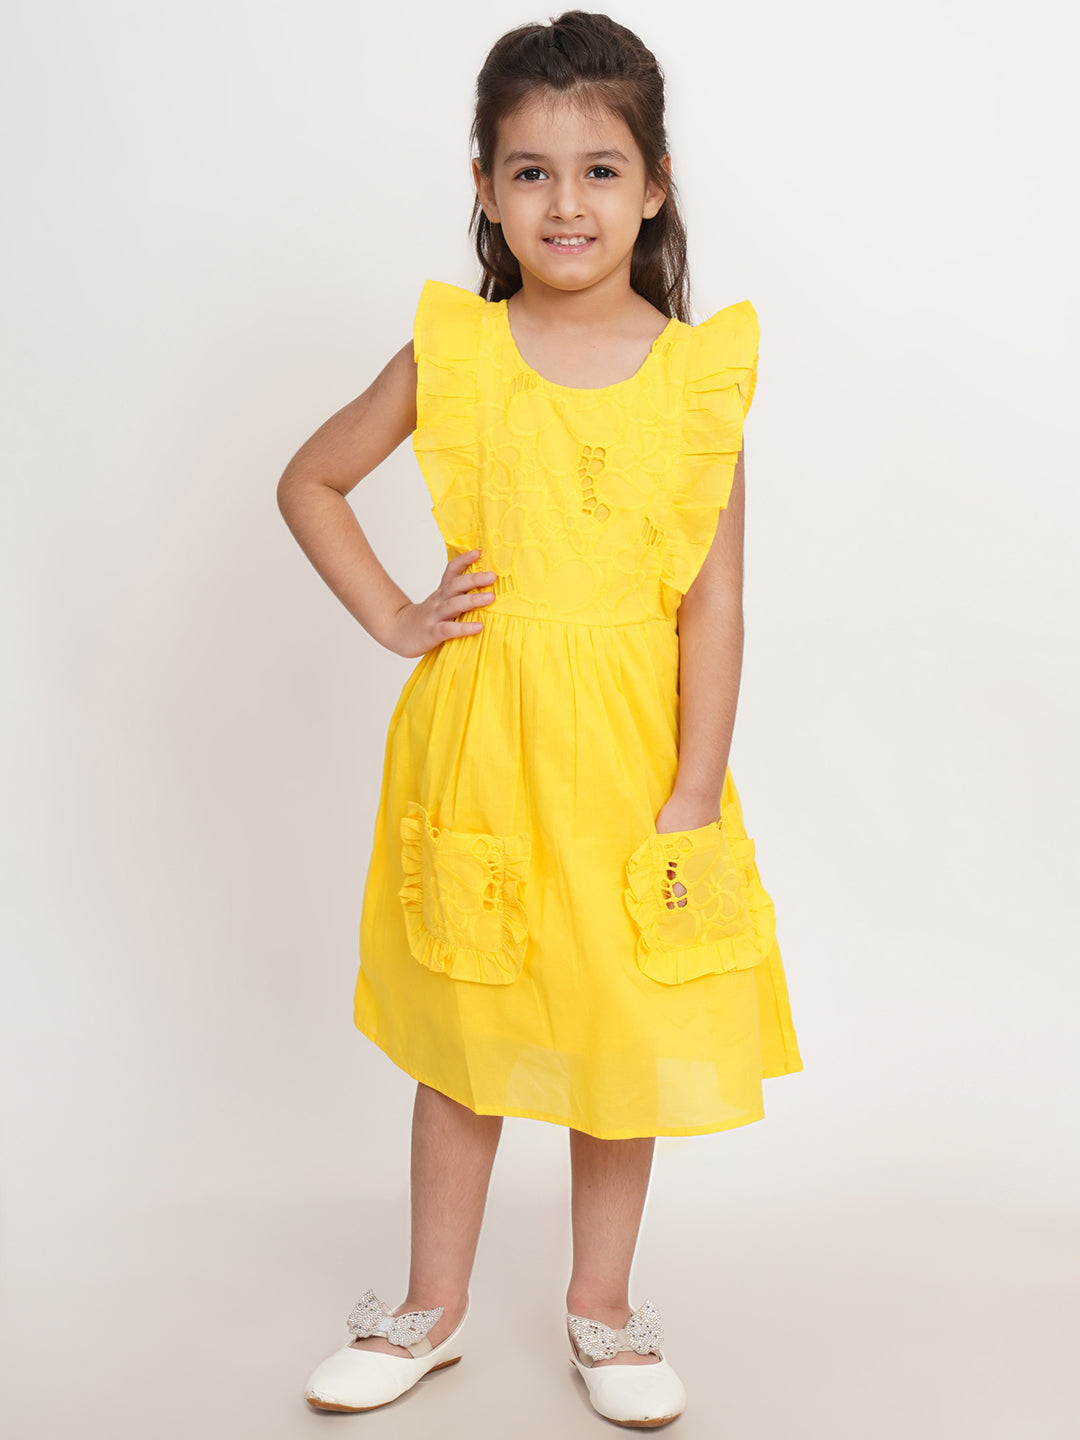 CREATIVE KID'S Girl Yellow Schiffli A-Line Dress With Pocket